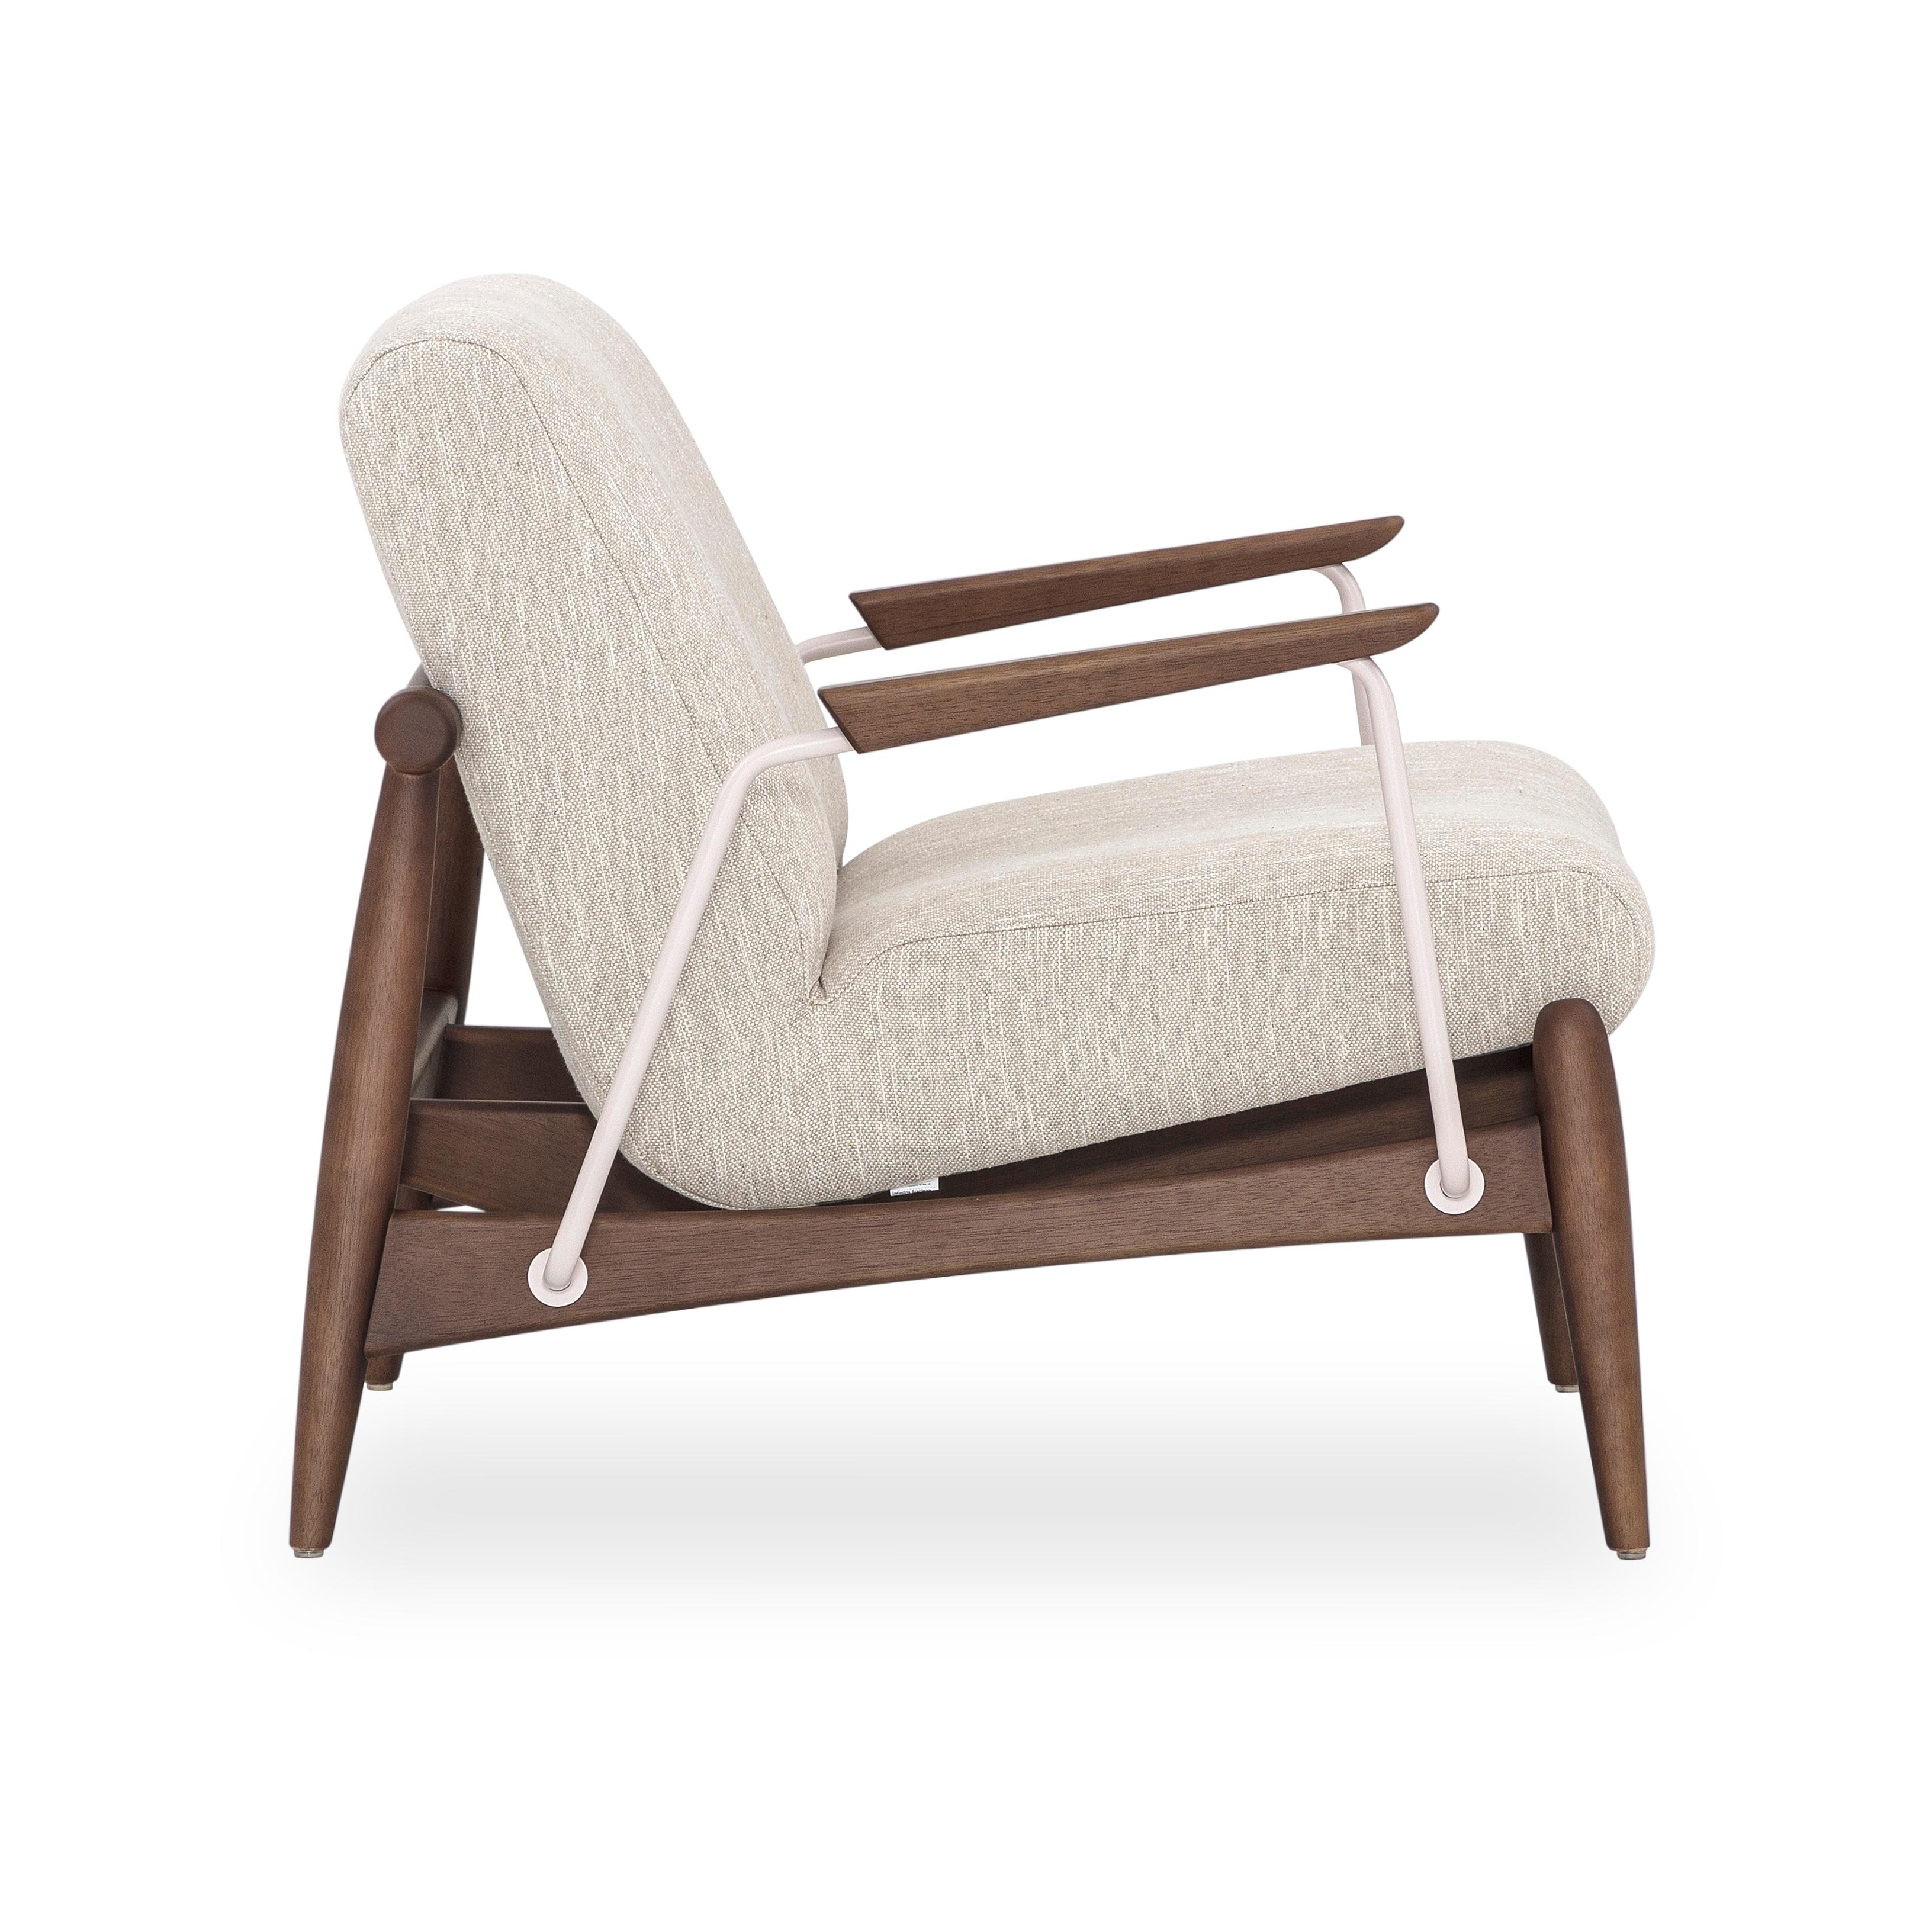 Der Sessel Win verfügt über Metallbeschläge und ein Gestell aus Walnussholz, das mit einem schönen elfenbeinfarbenen Stoff bezogen ist. Unser erstaunliches Uultis Design Team hat diesen Sessel für Ihren Komfort und Ihre Unterstützung entworfen, den